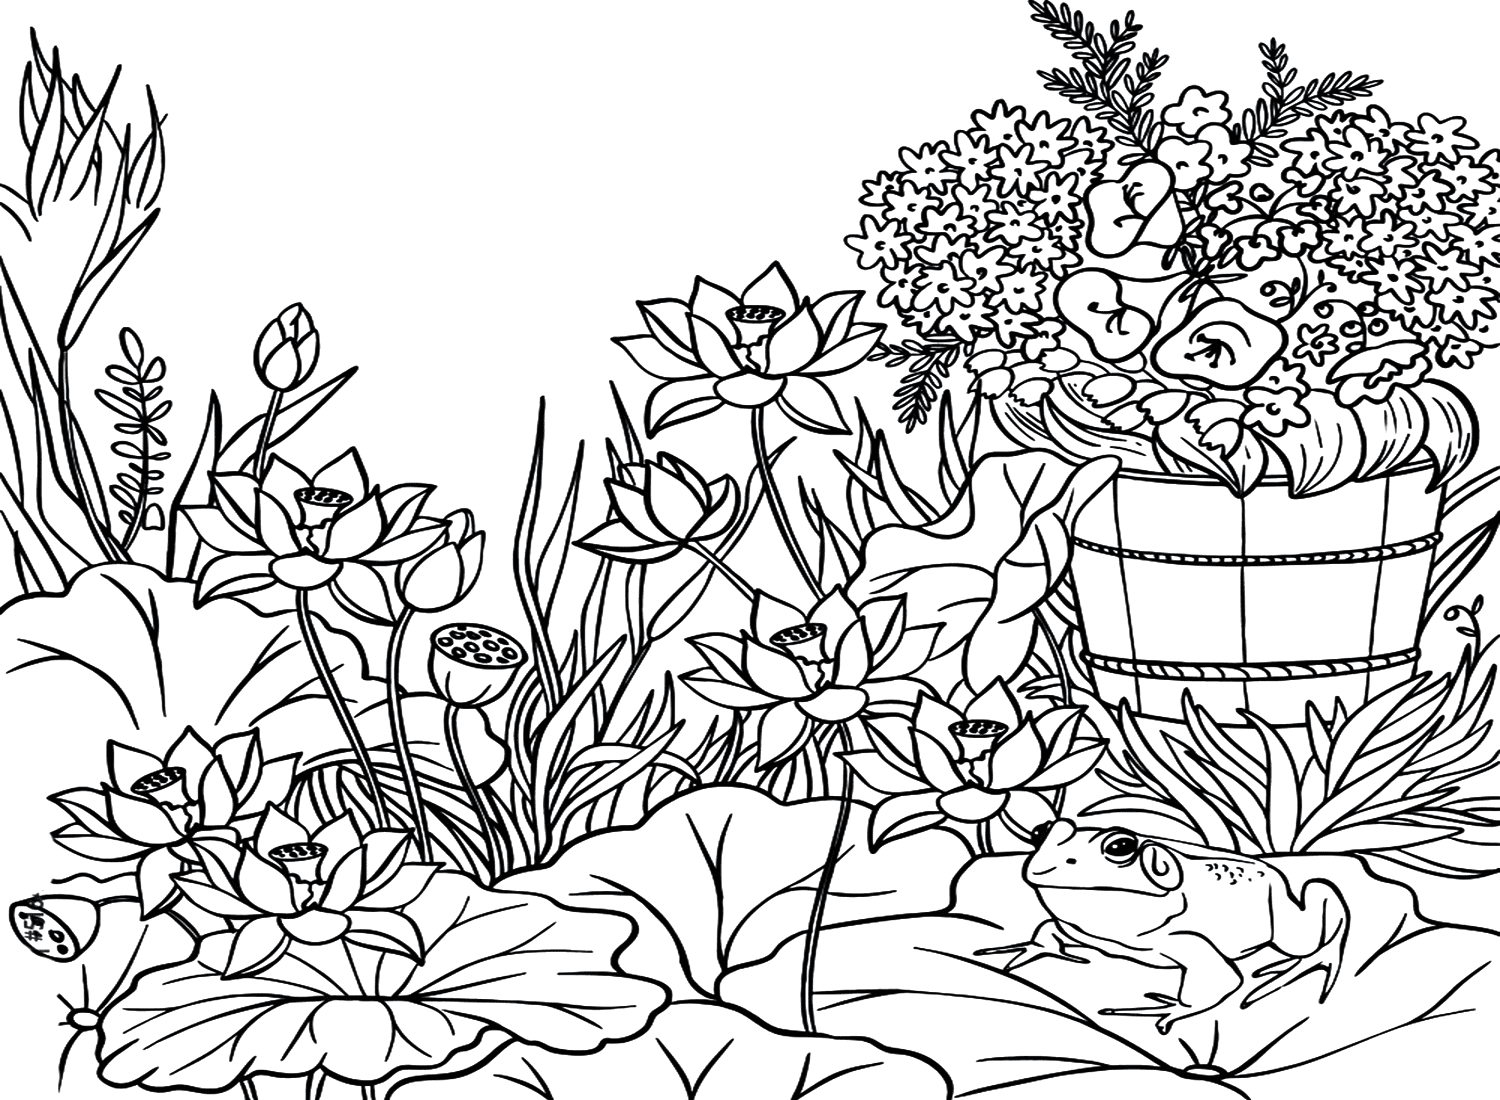 Malvorlage „Aga-Kröte im Garten“ von Cane-Toad